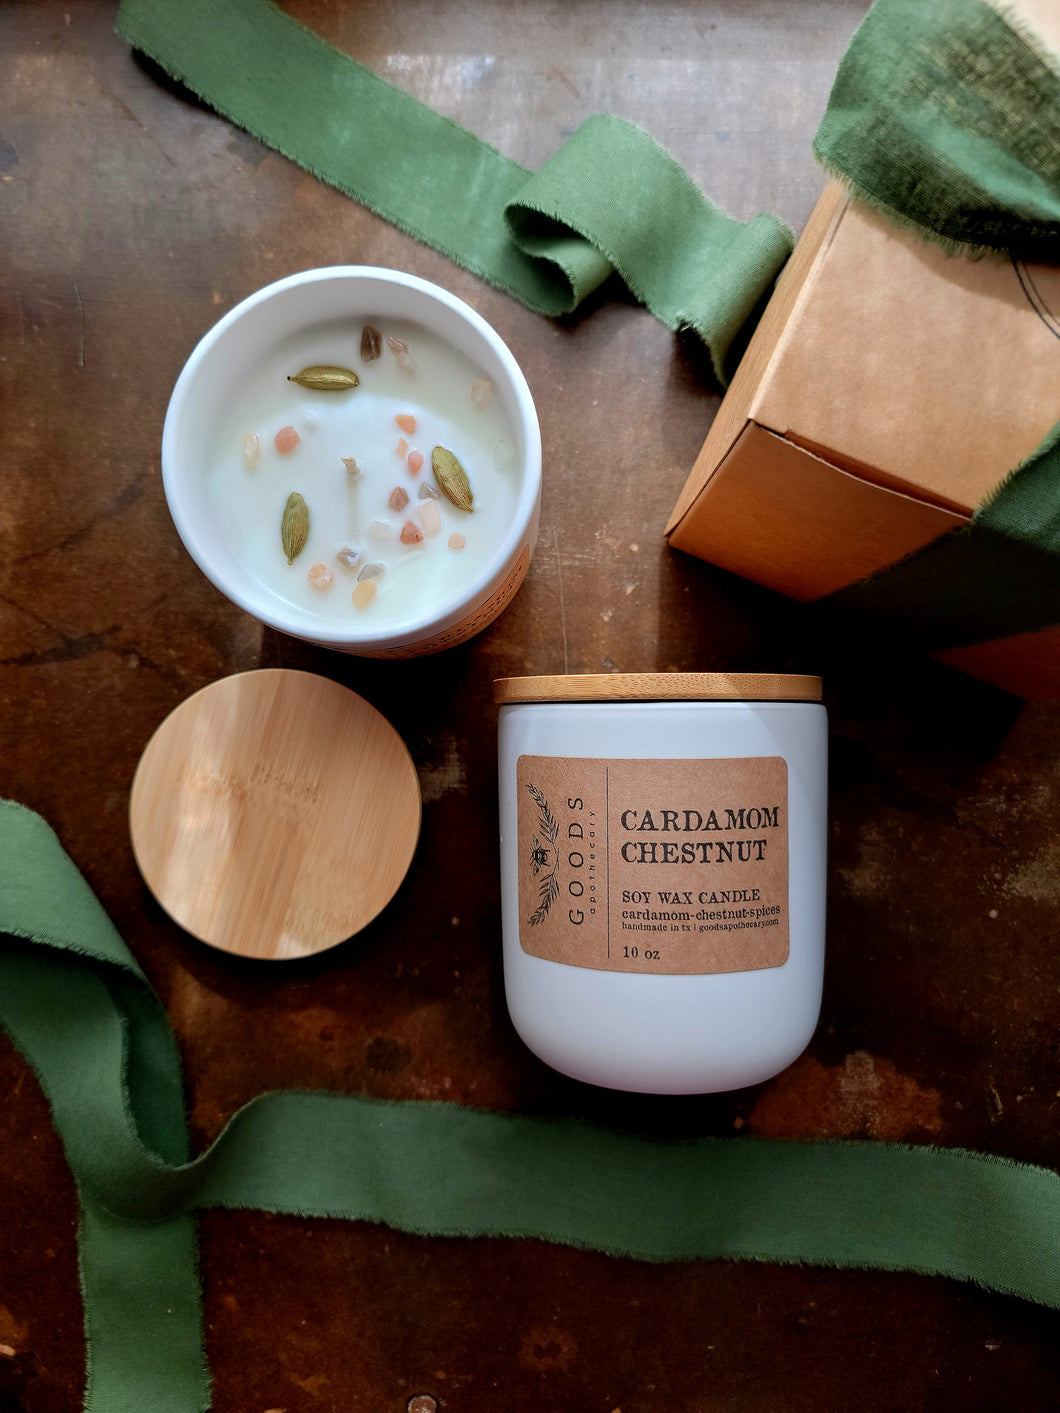 Cardamom Chestnut Soy Wax Candle